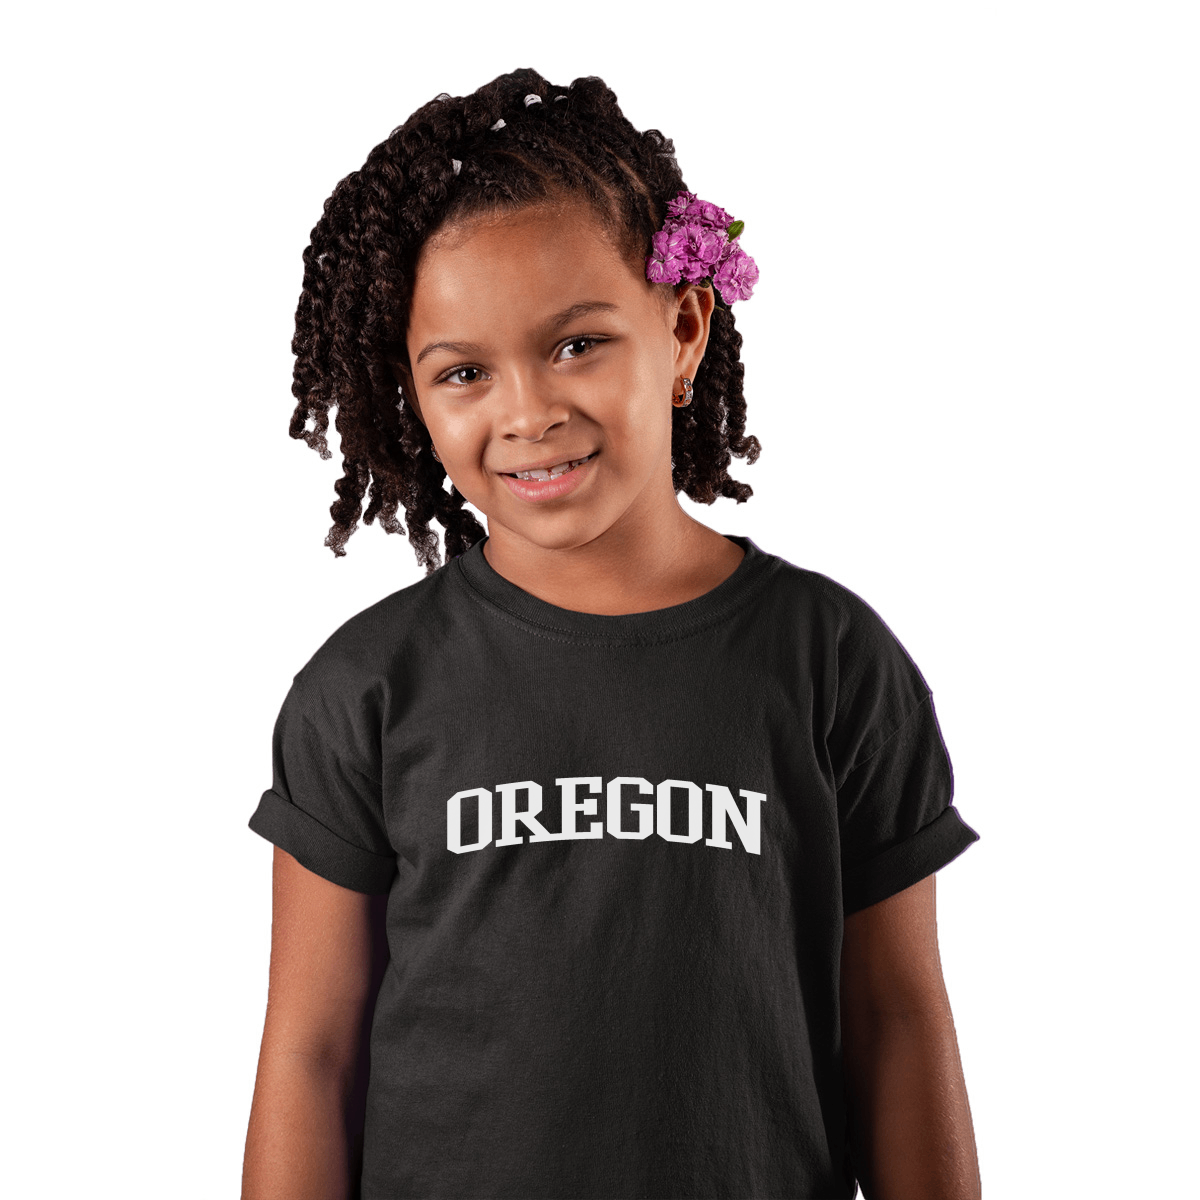 Oregon Kids T-shirt | Black